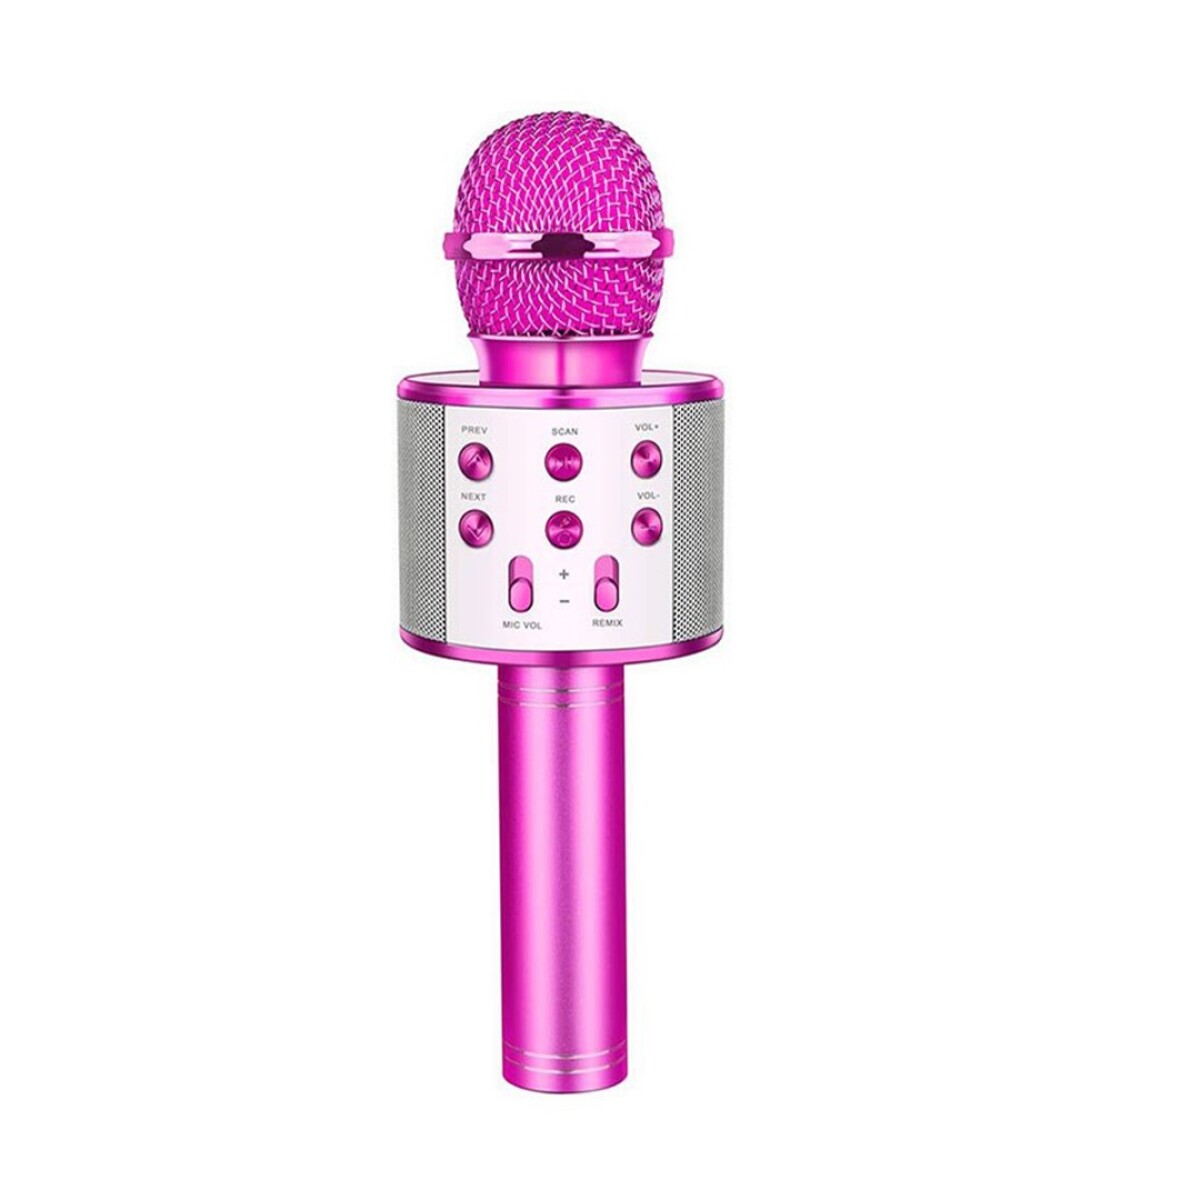 Microfono con Bluetooth y Parlante WS-858 - FUCSIA 